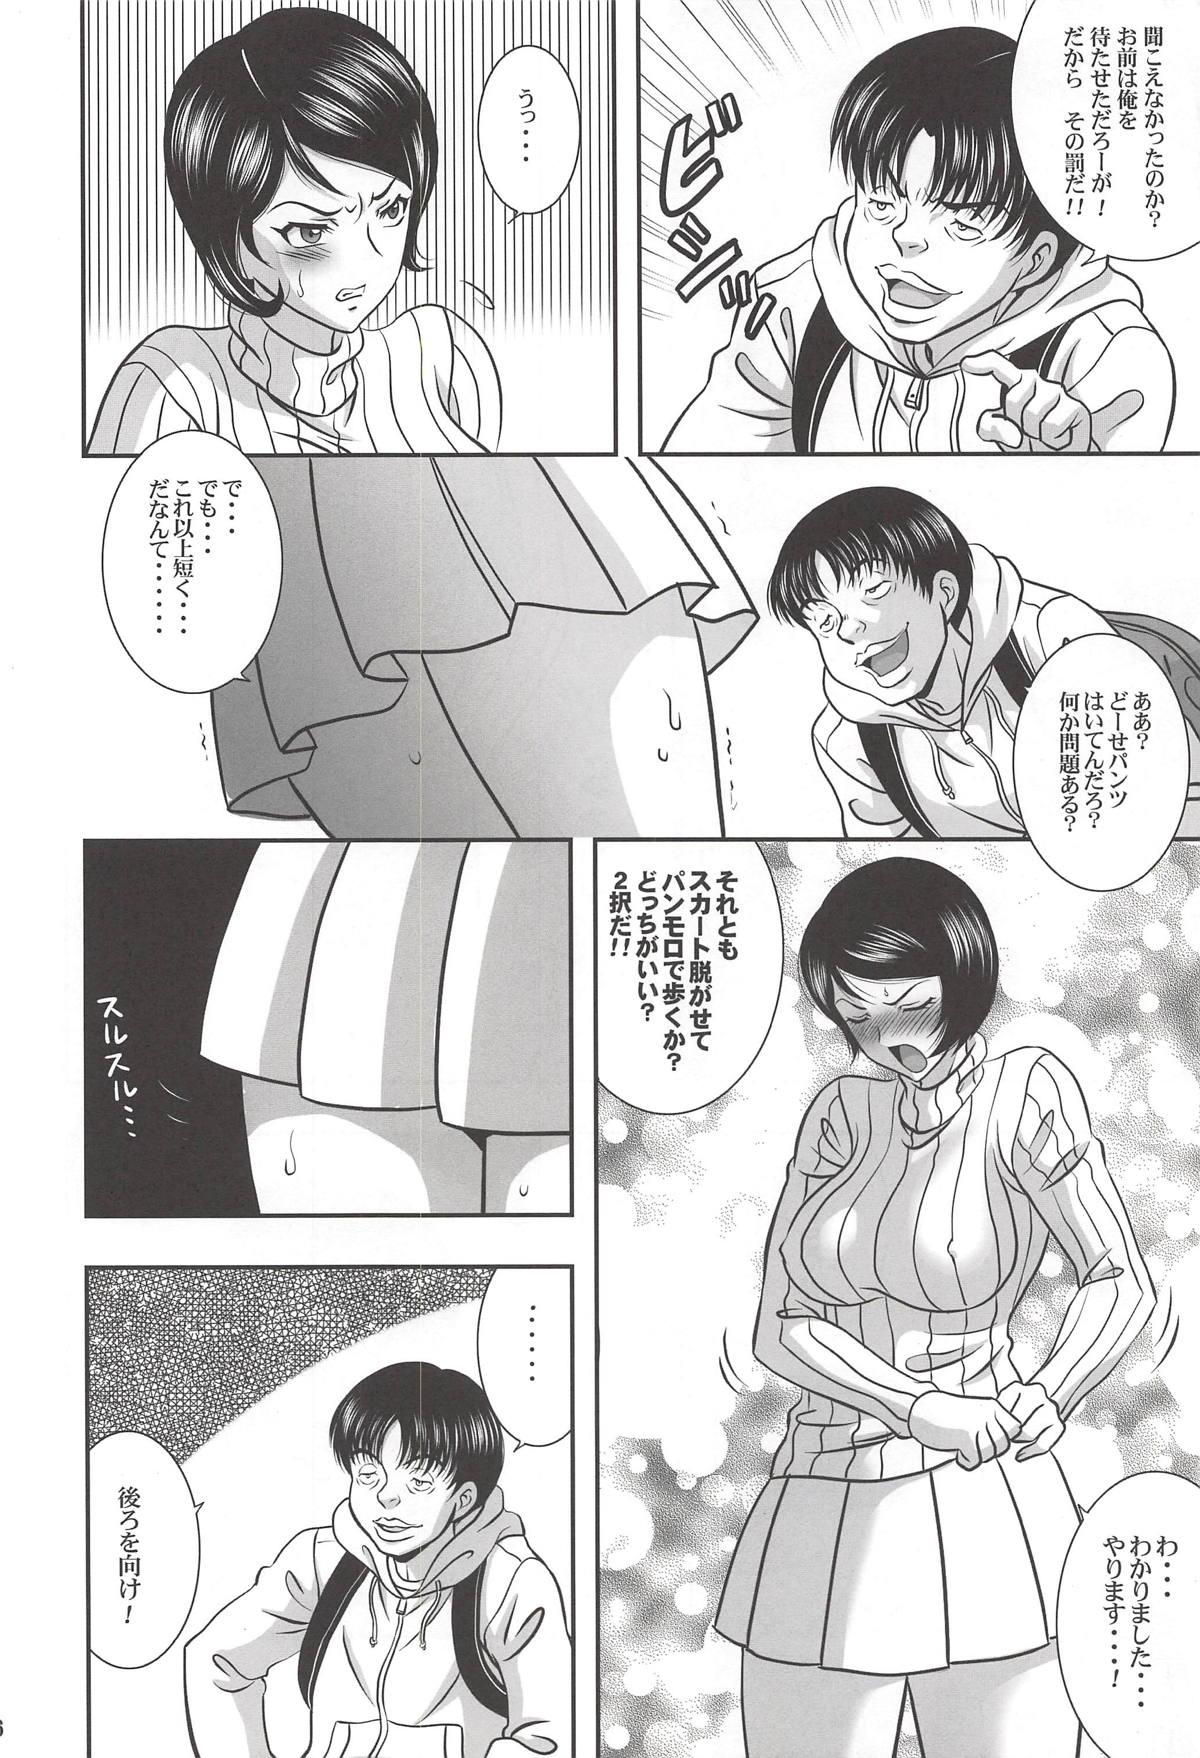 Moms ISHIZAWA 05 - Bakuman Fucking Hard - Page 5